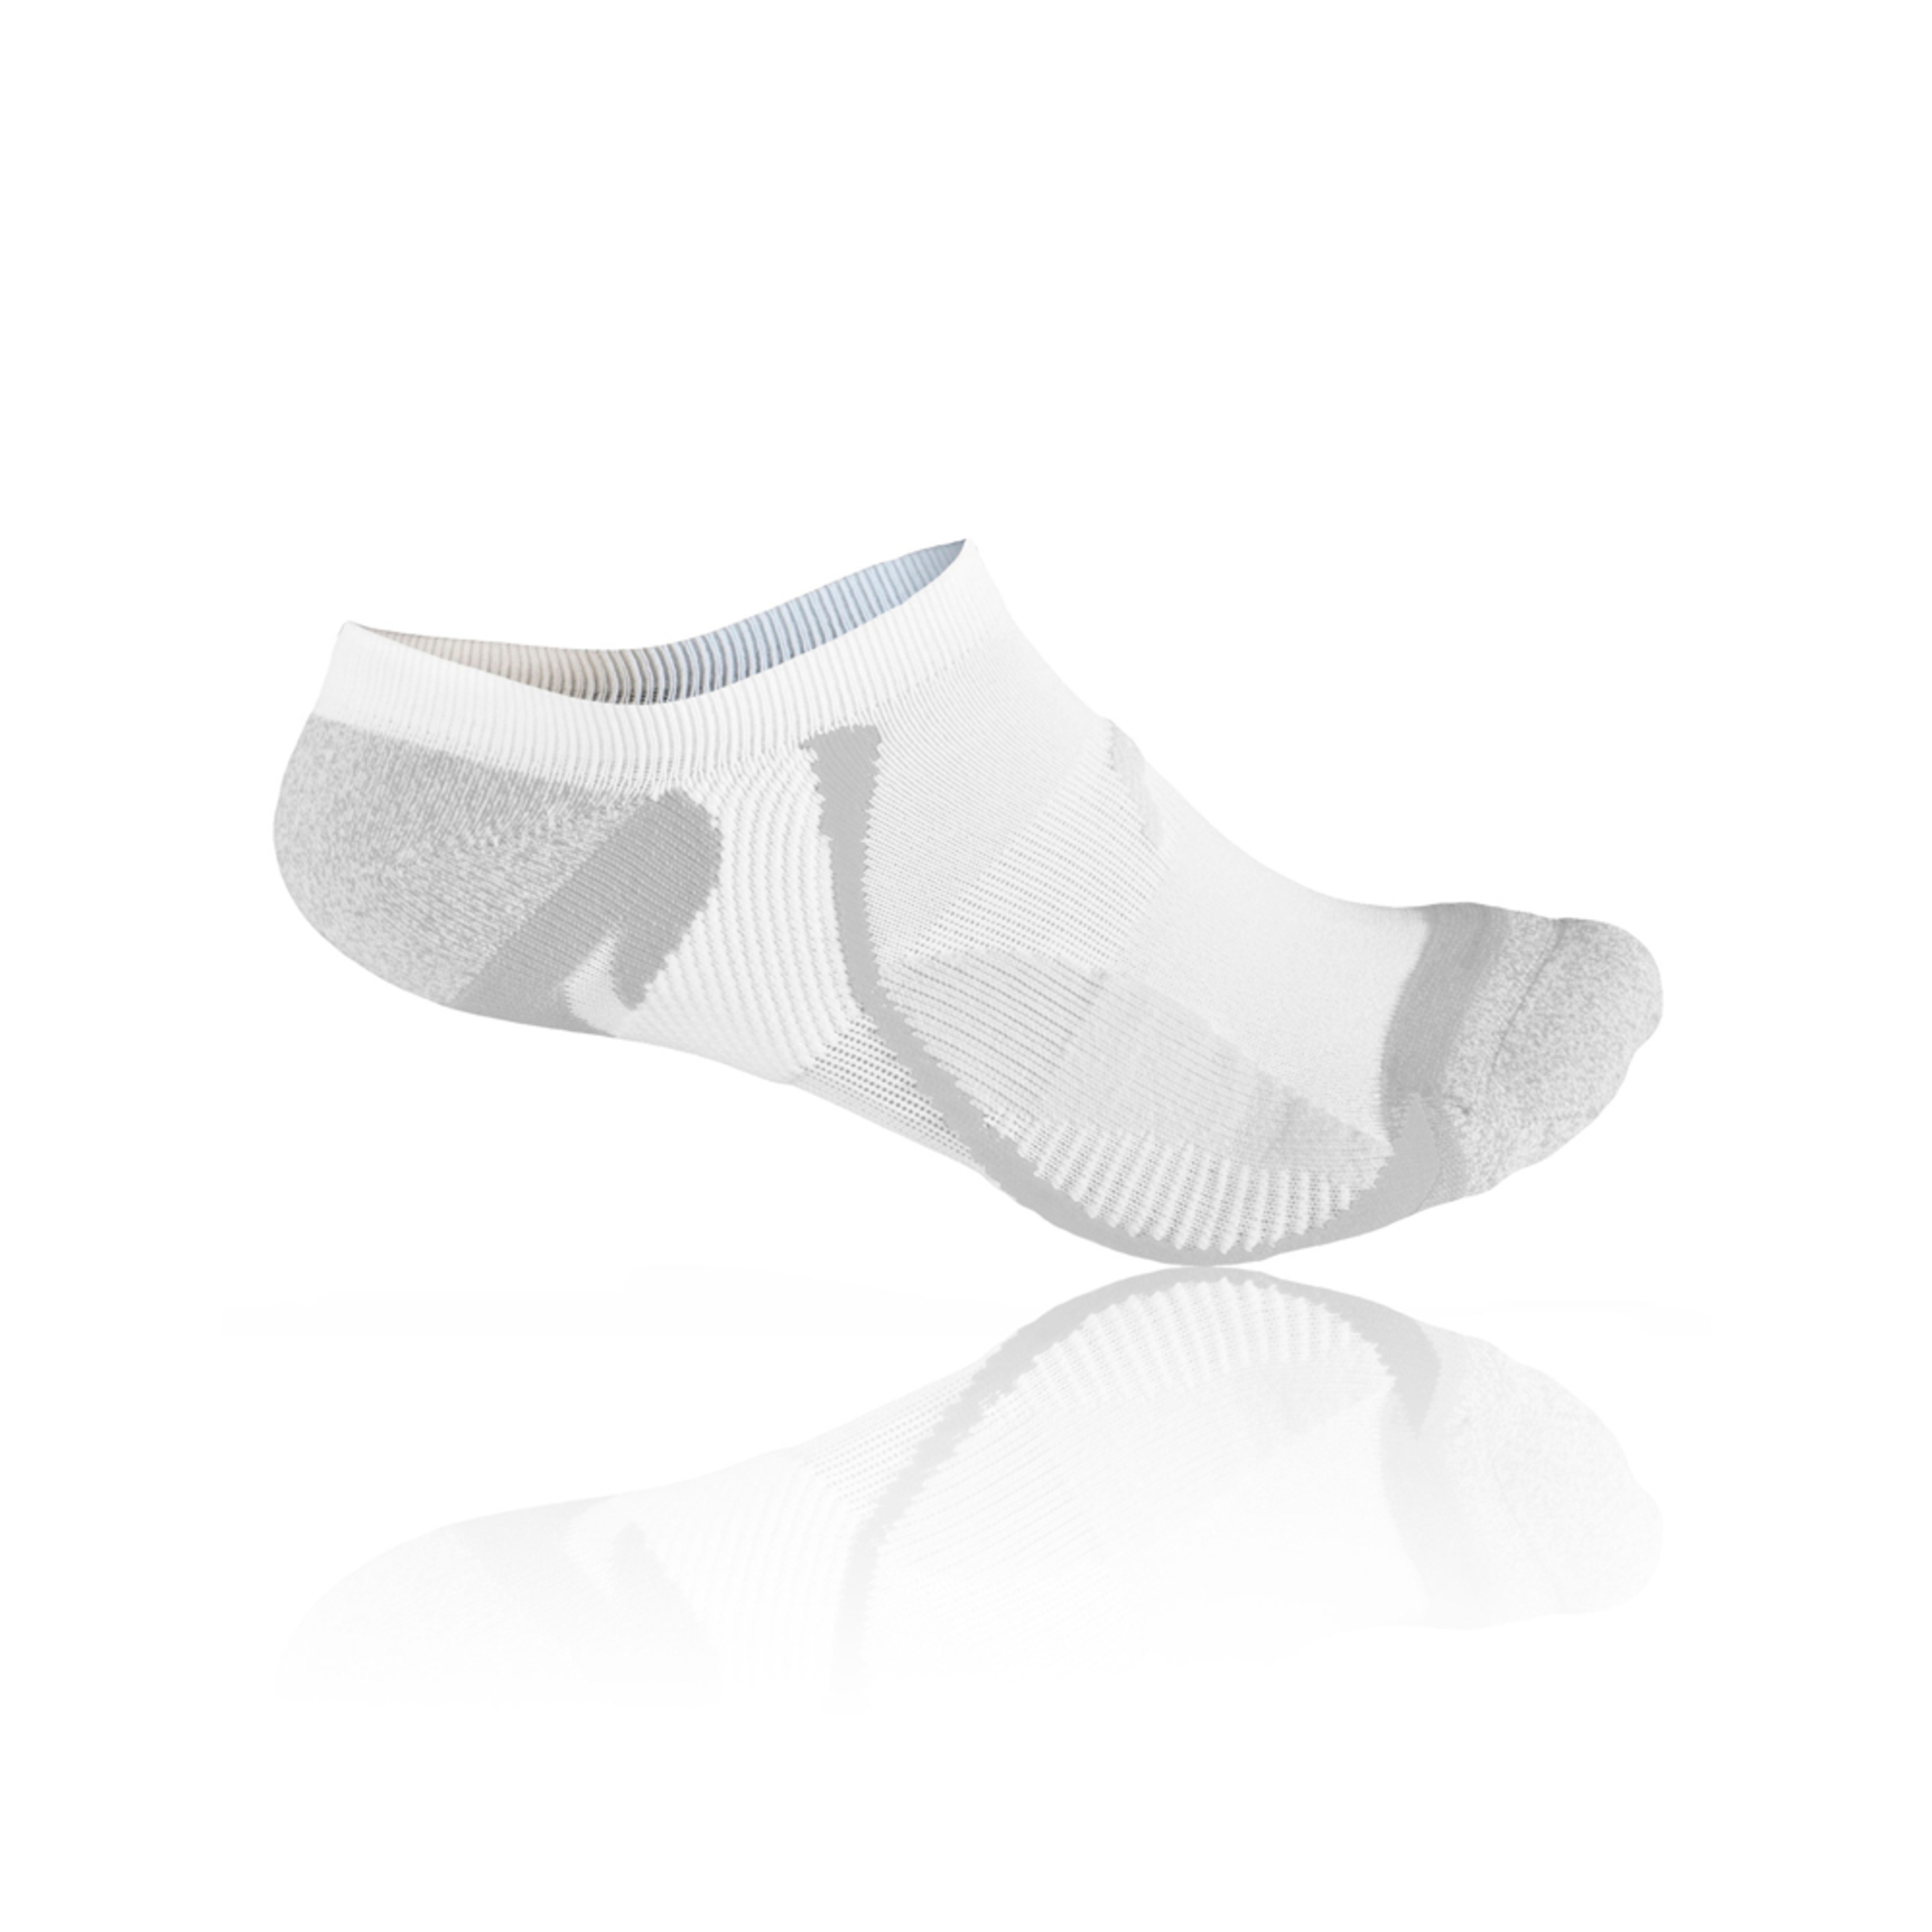 Calcetines Running Invisibles F-lite Ra 100 Microlon - Blanco - Calcetines cómodos y resistentes  MKP